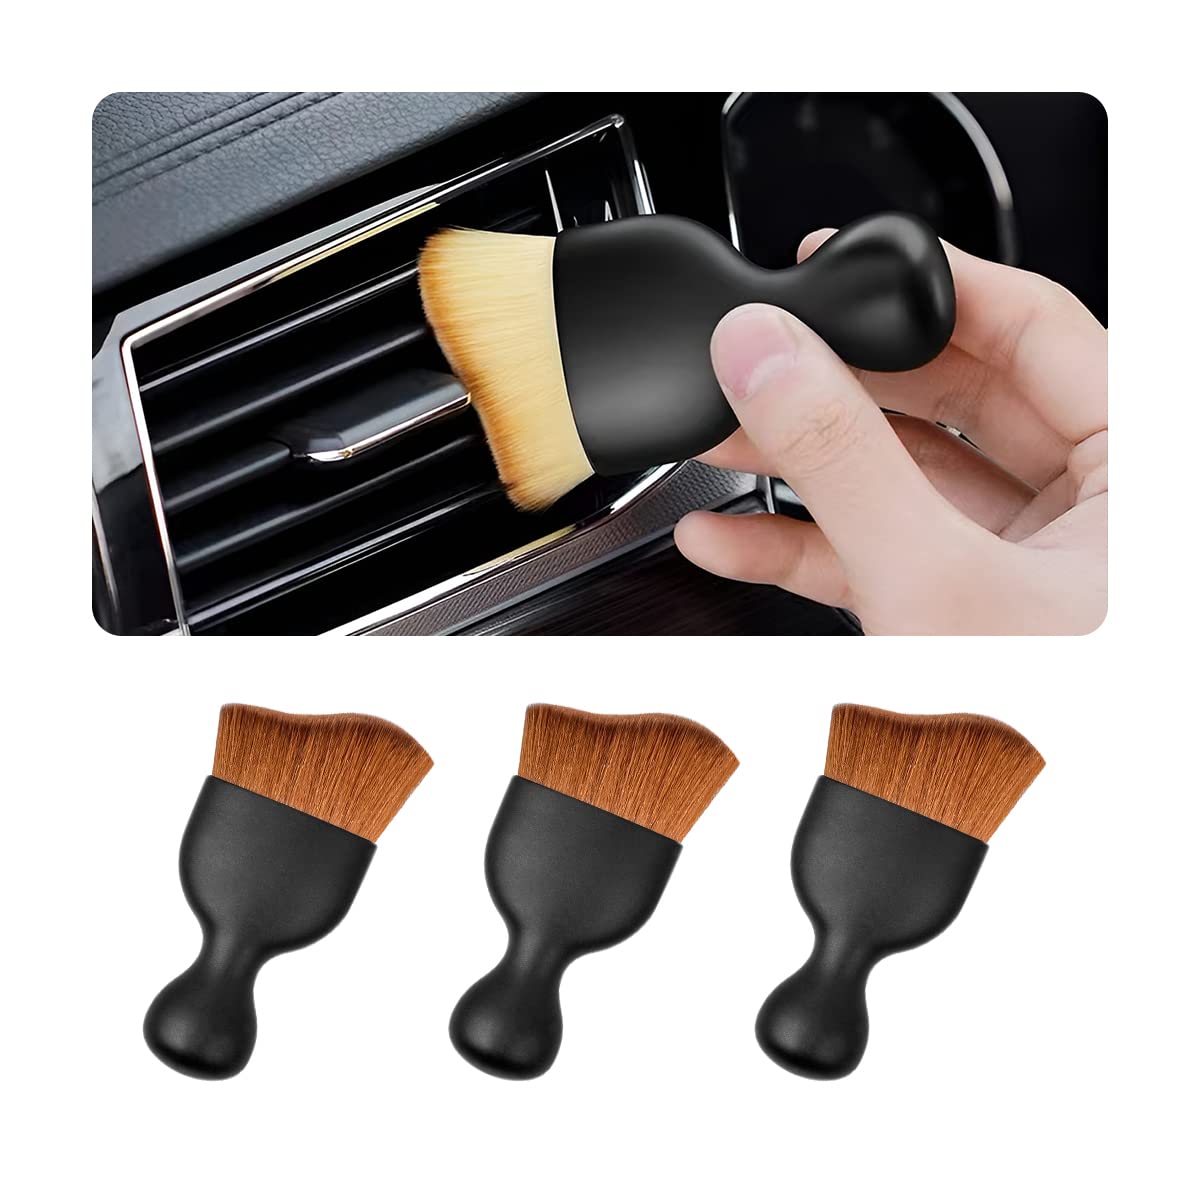 CGEAMDY 3 Stück Auto Reinigungsbürsten, Reinigung Pinsel, Auto Innenreinigung Weiche Bürste, für die Detailreinigung des on Autos Innenraums Außen Lüftungsschlitze Armaturenbrett Embleme (Dunkelbraun) von CGEAMDY